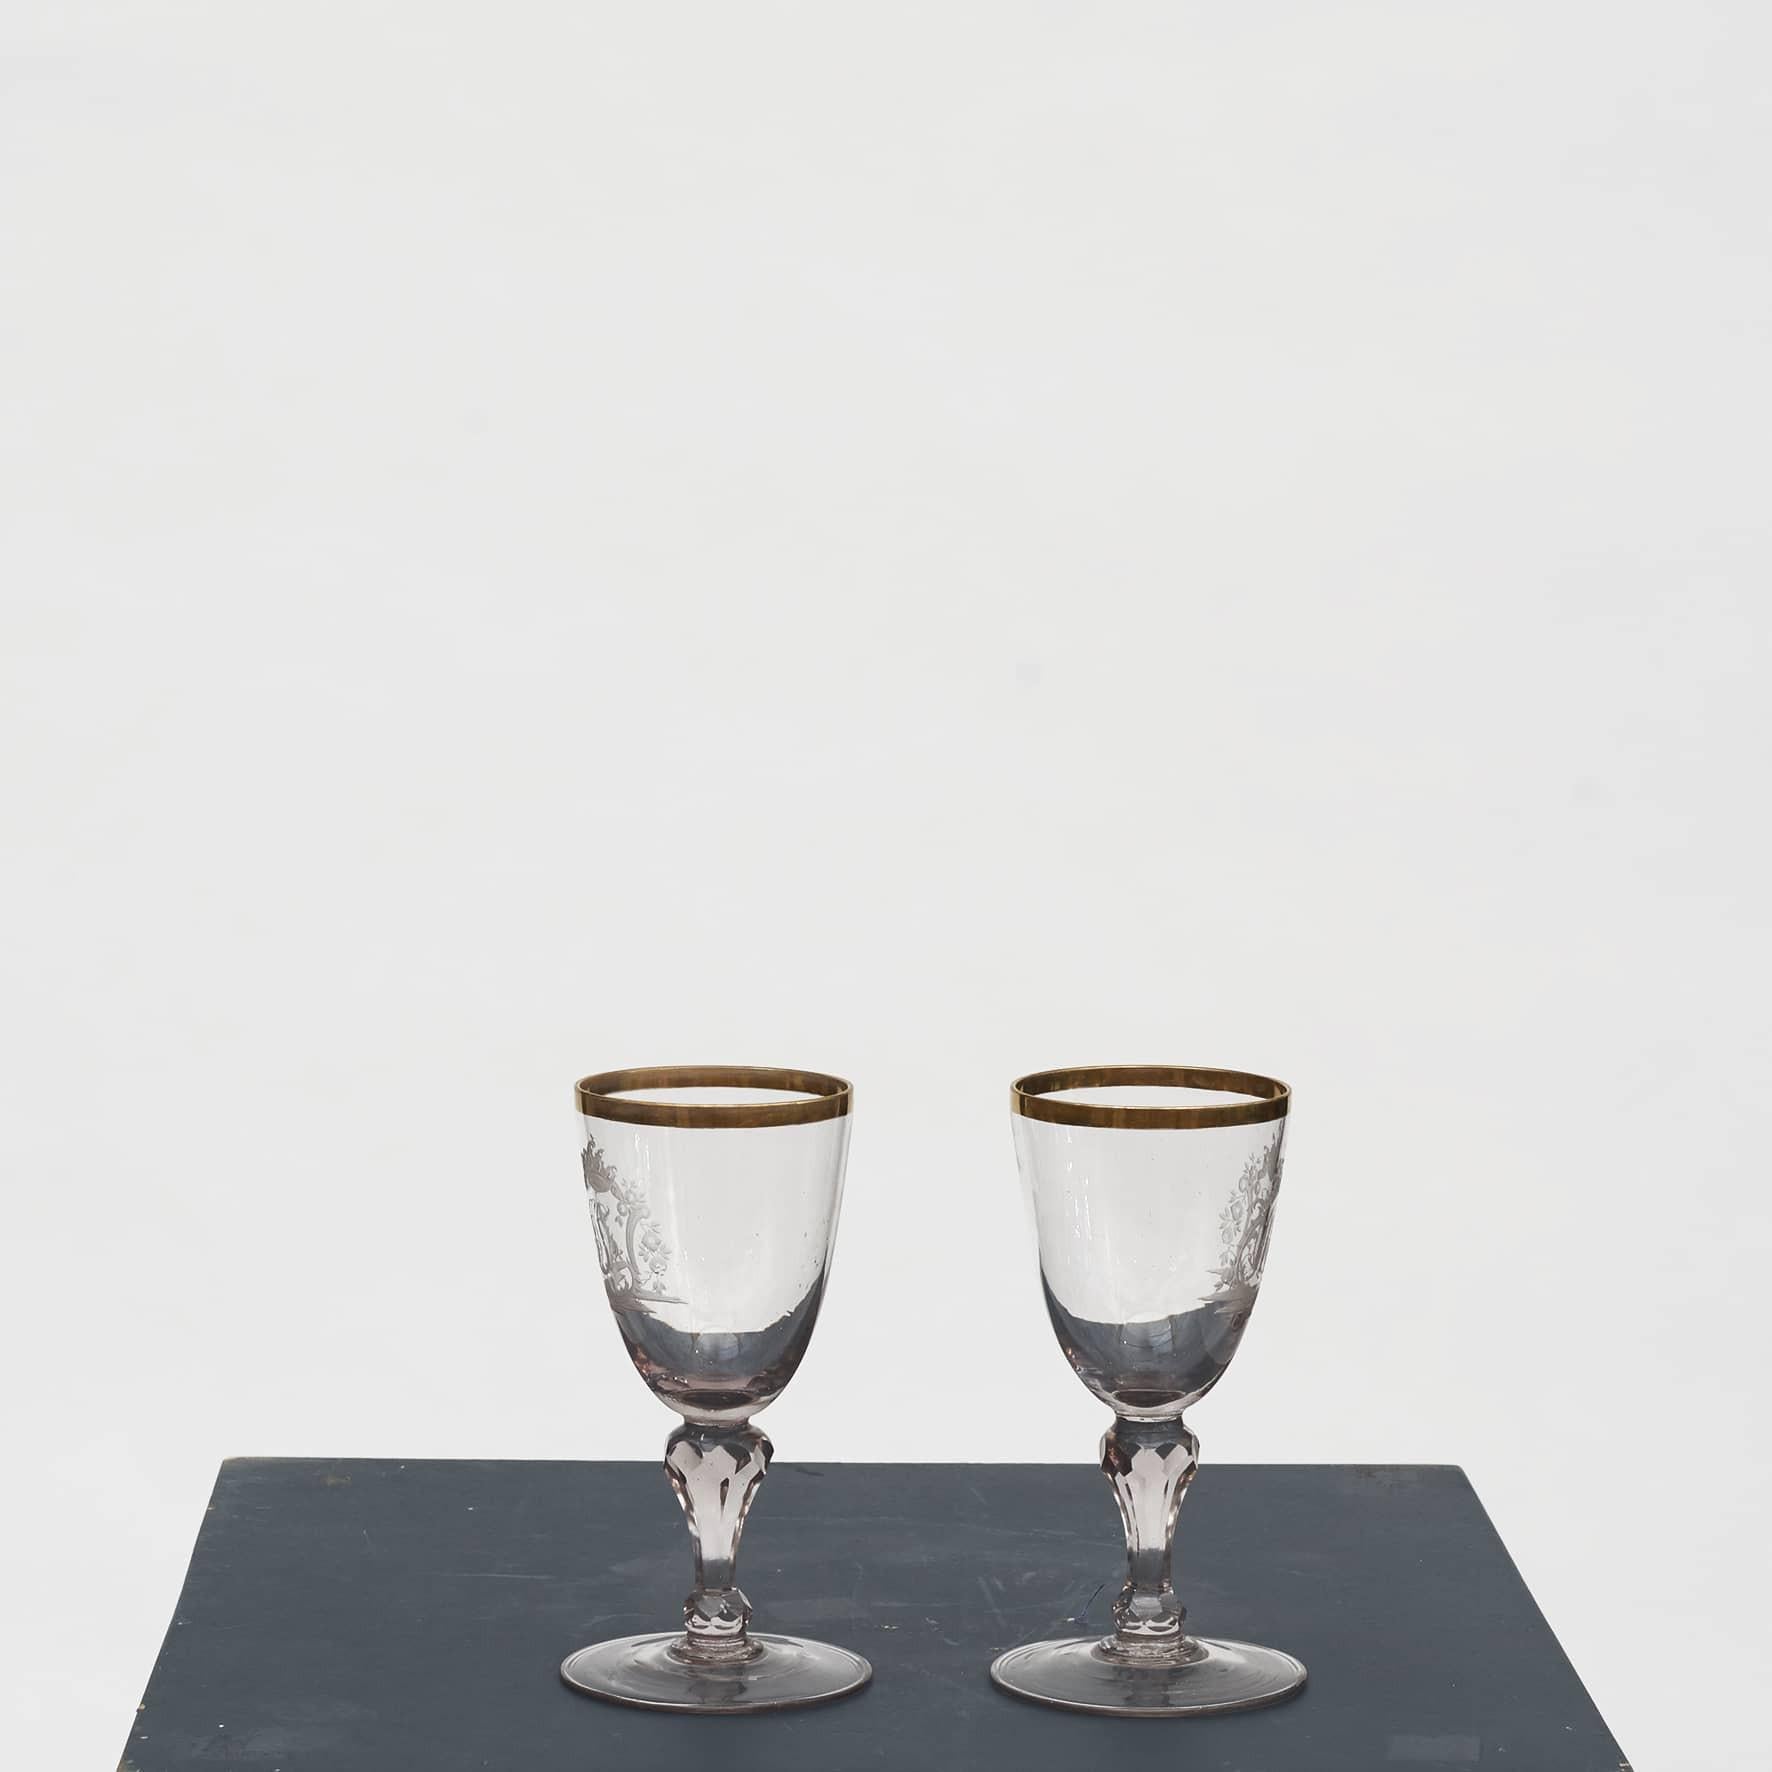 Zwei mundgeblasene barocke Weingläser mit eingraviertem Monogramm und Rankenwerk. Goldumrandeter und facettierter Stiel.
Die Gläser stammen wahrscheinlich aus Deutschland, Mitte des 18. Jahrhunderts.

In gutem Zustand.
Wird als Paar verkauft.
